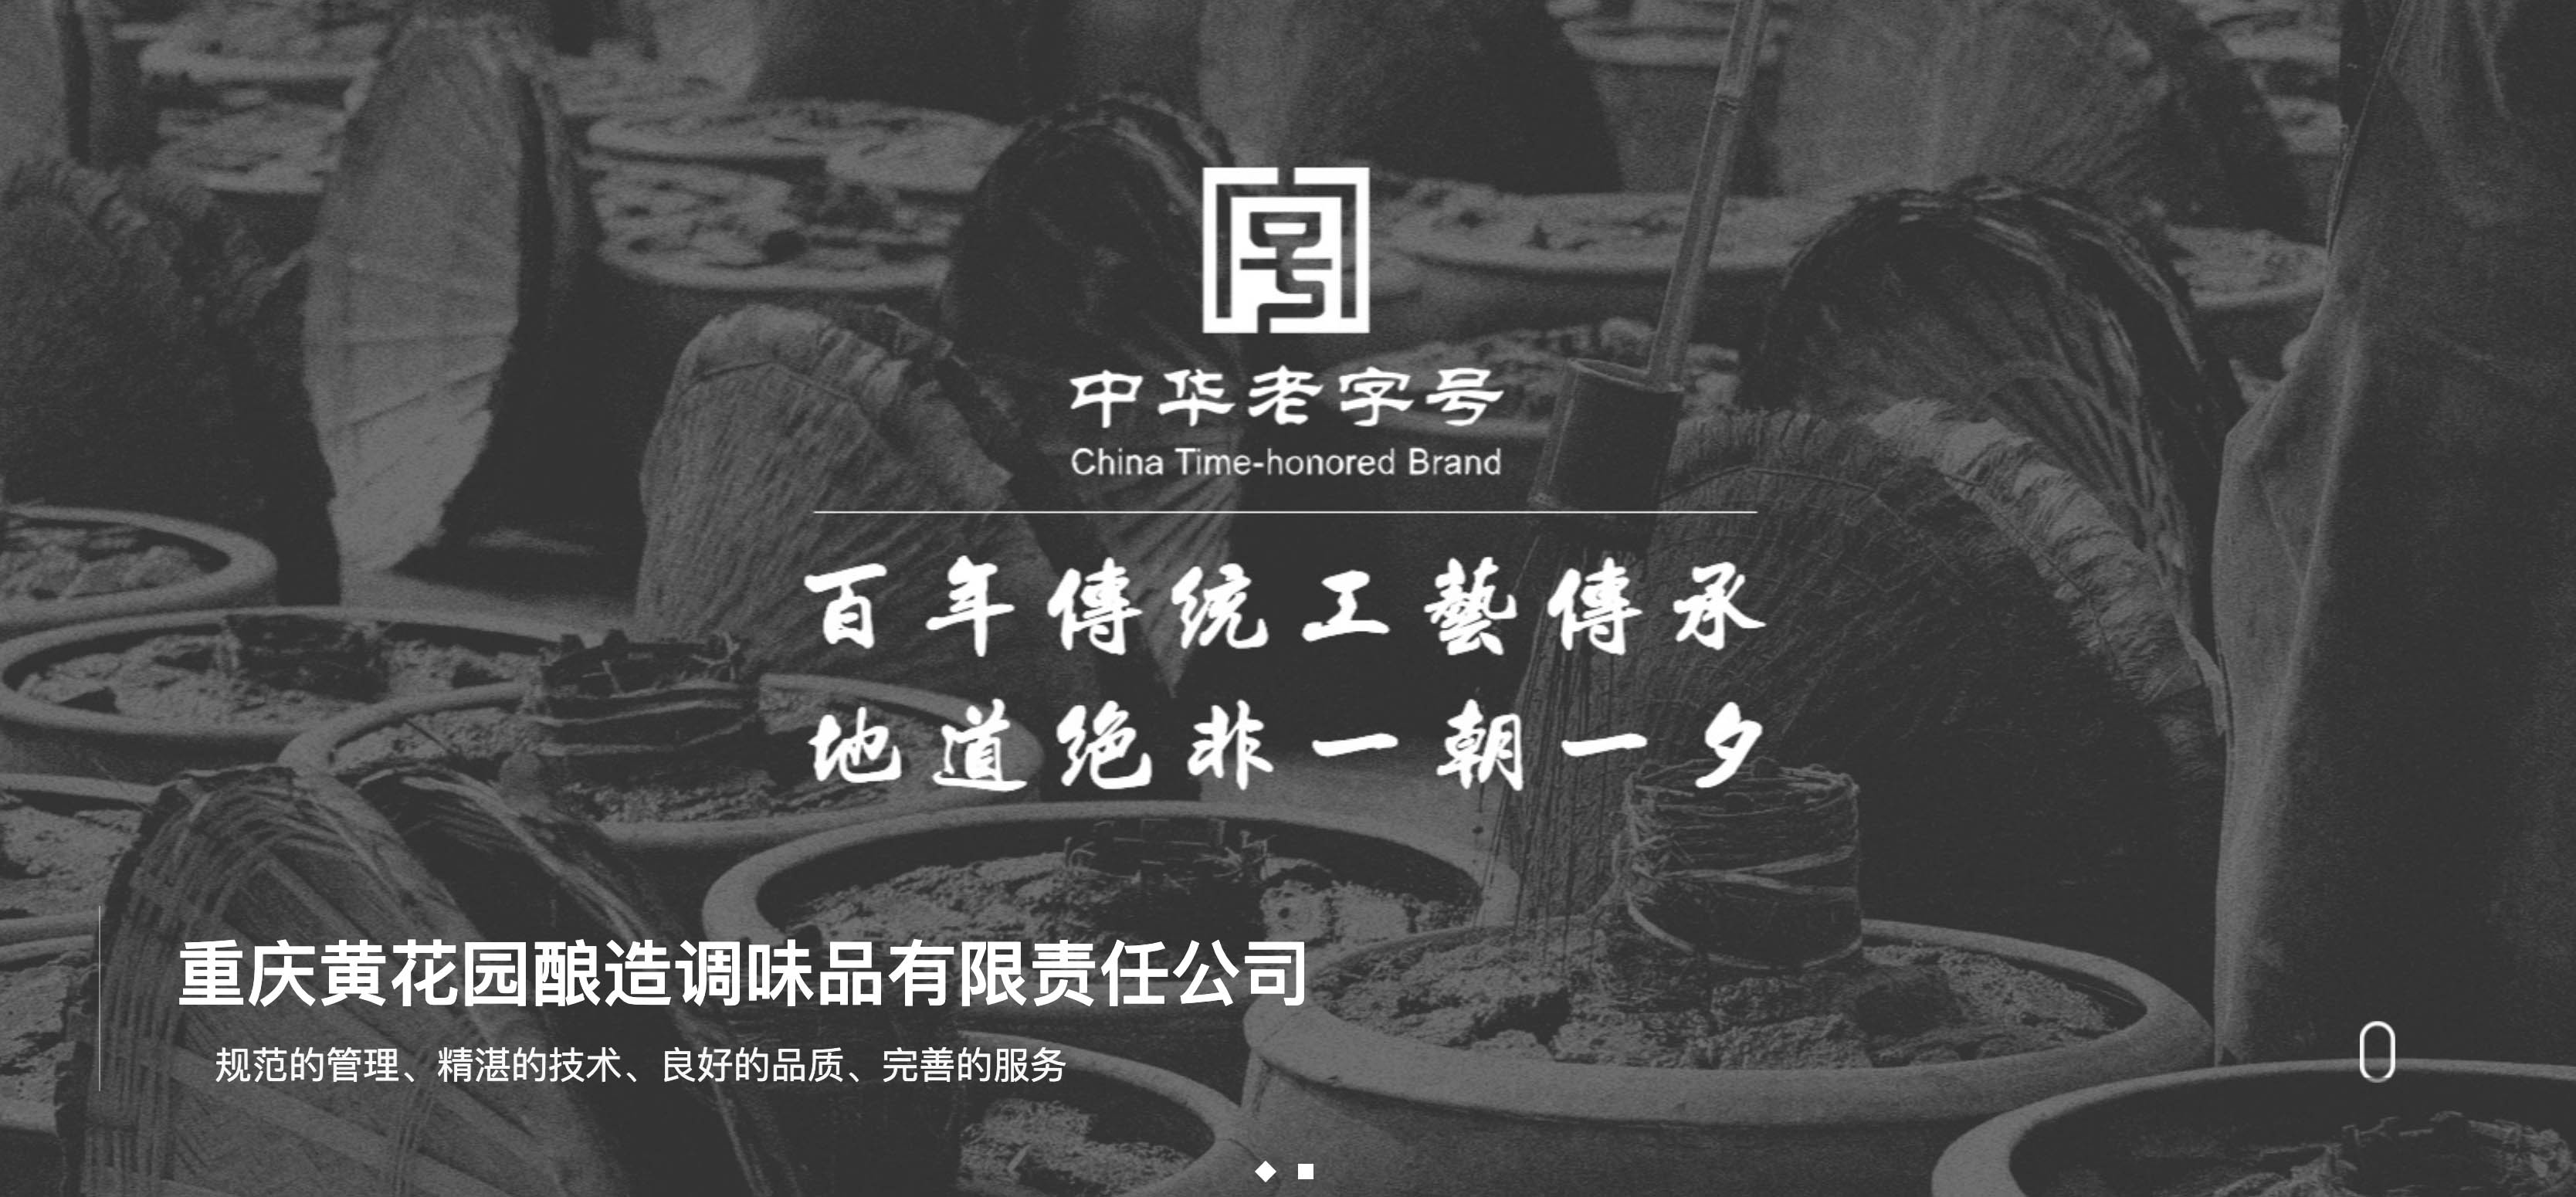 重庆黄花园酿造调味品有限责任公司